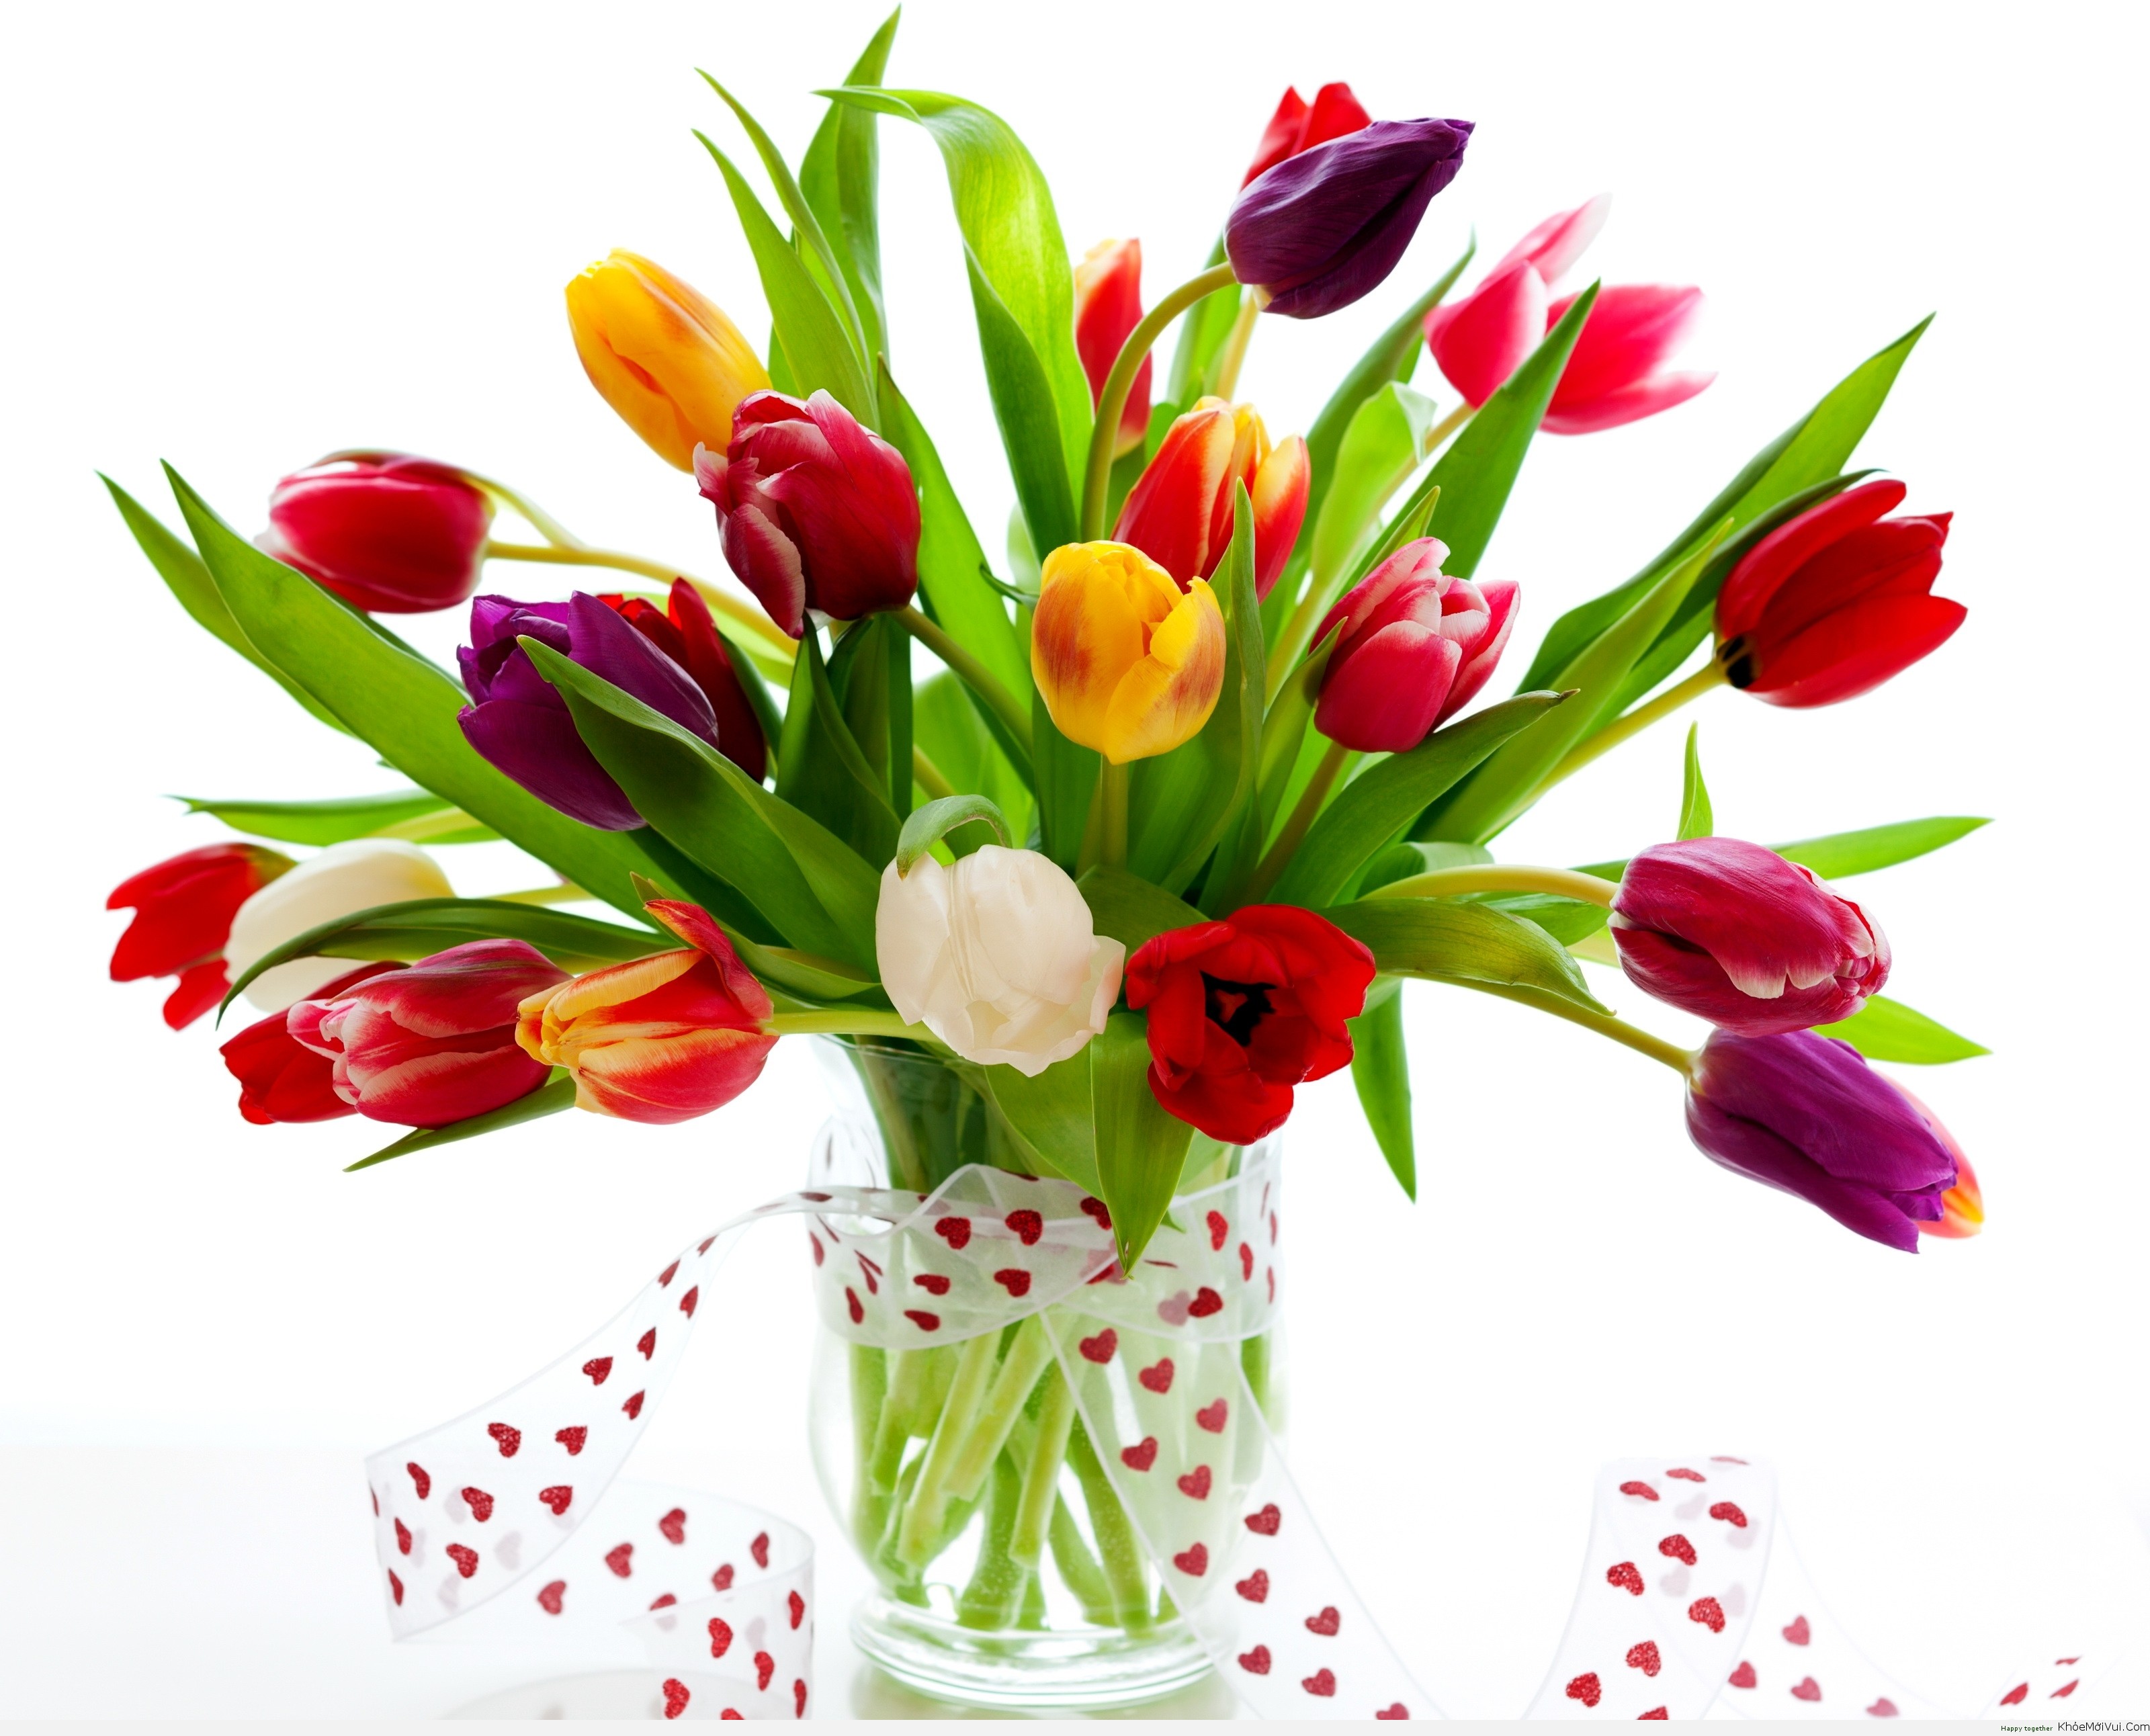 Set 5 củ giống hoa tulip mix 5 màu ( 5 màu đỏ , vàng , cam,tím sọc , trắng đỏ lửa )